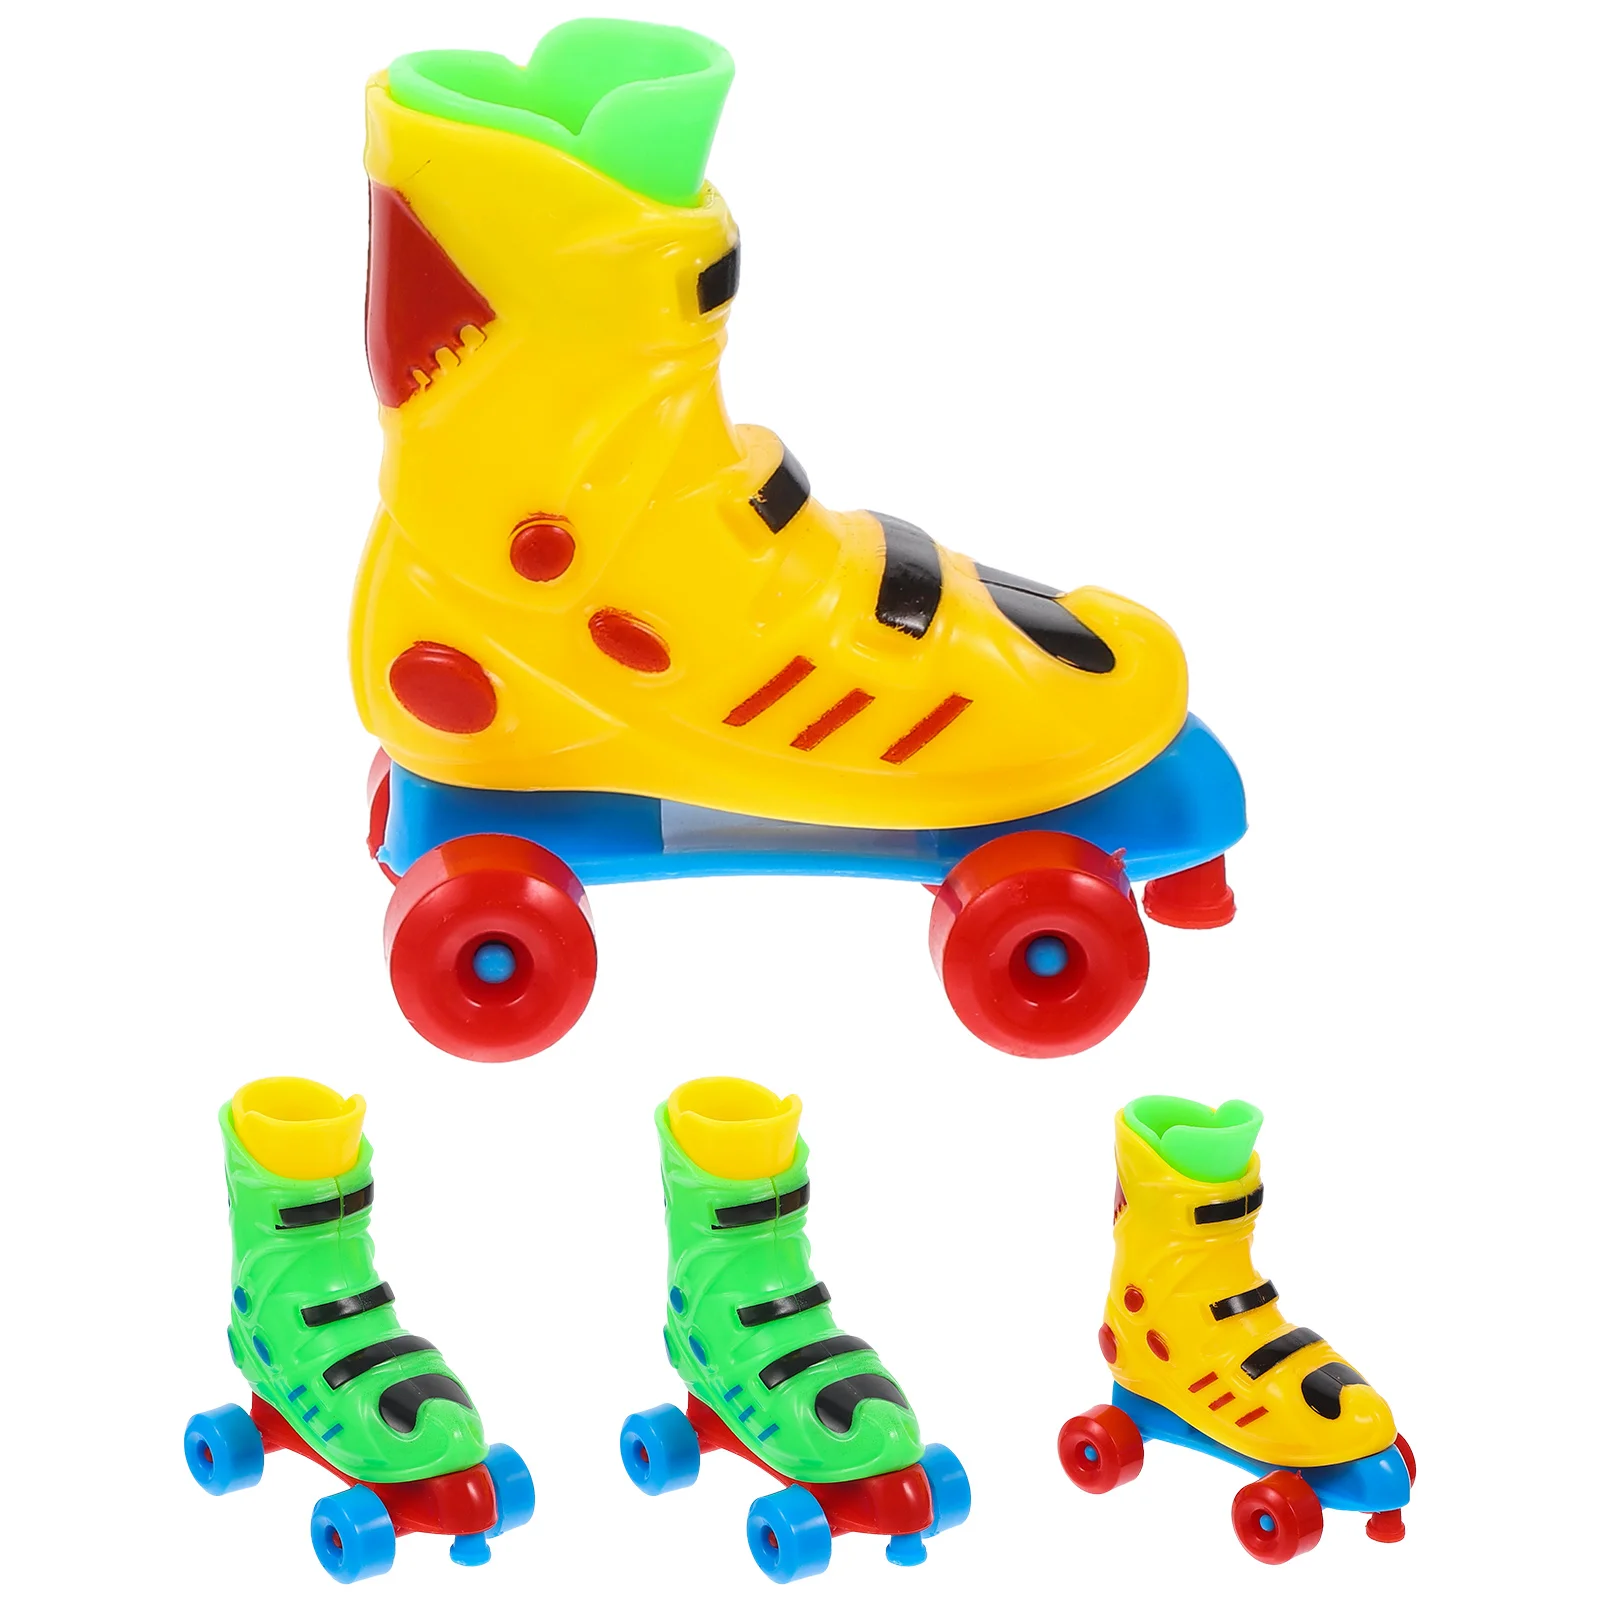 

2 Pair of Funny Finger Skate Skates Toy Finger Roller Skate Toy Novelty Roller Skate Toys